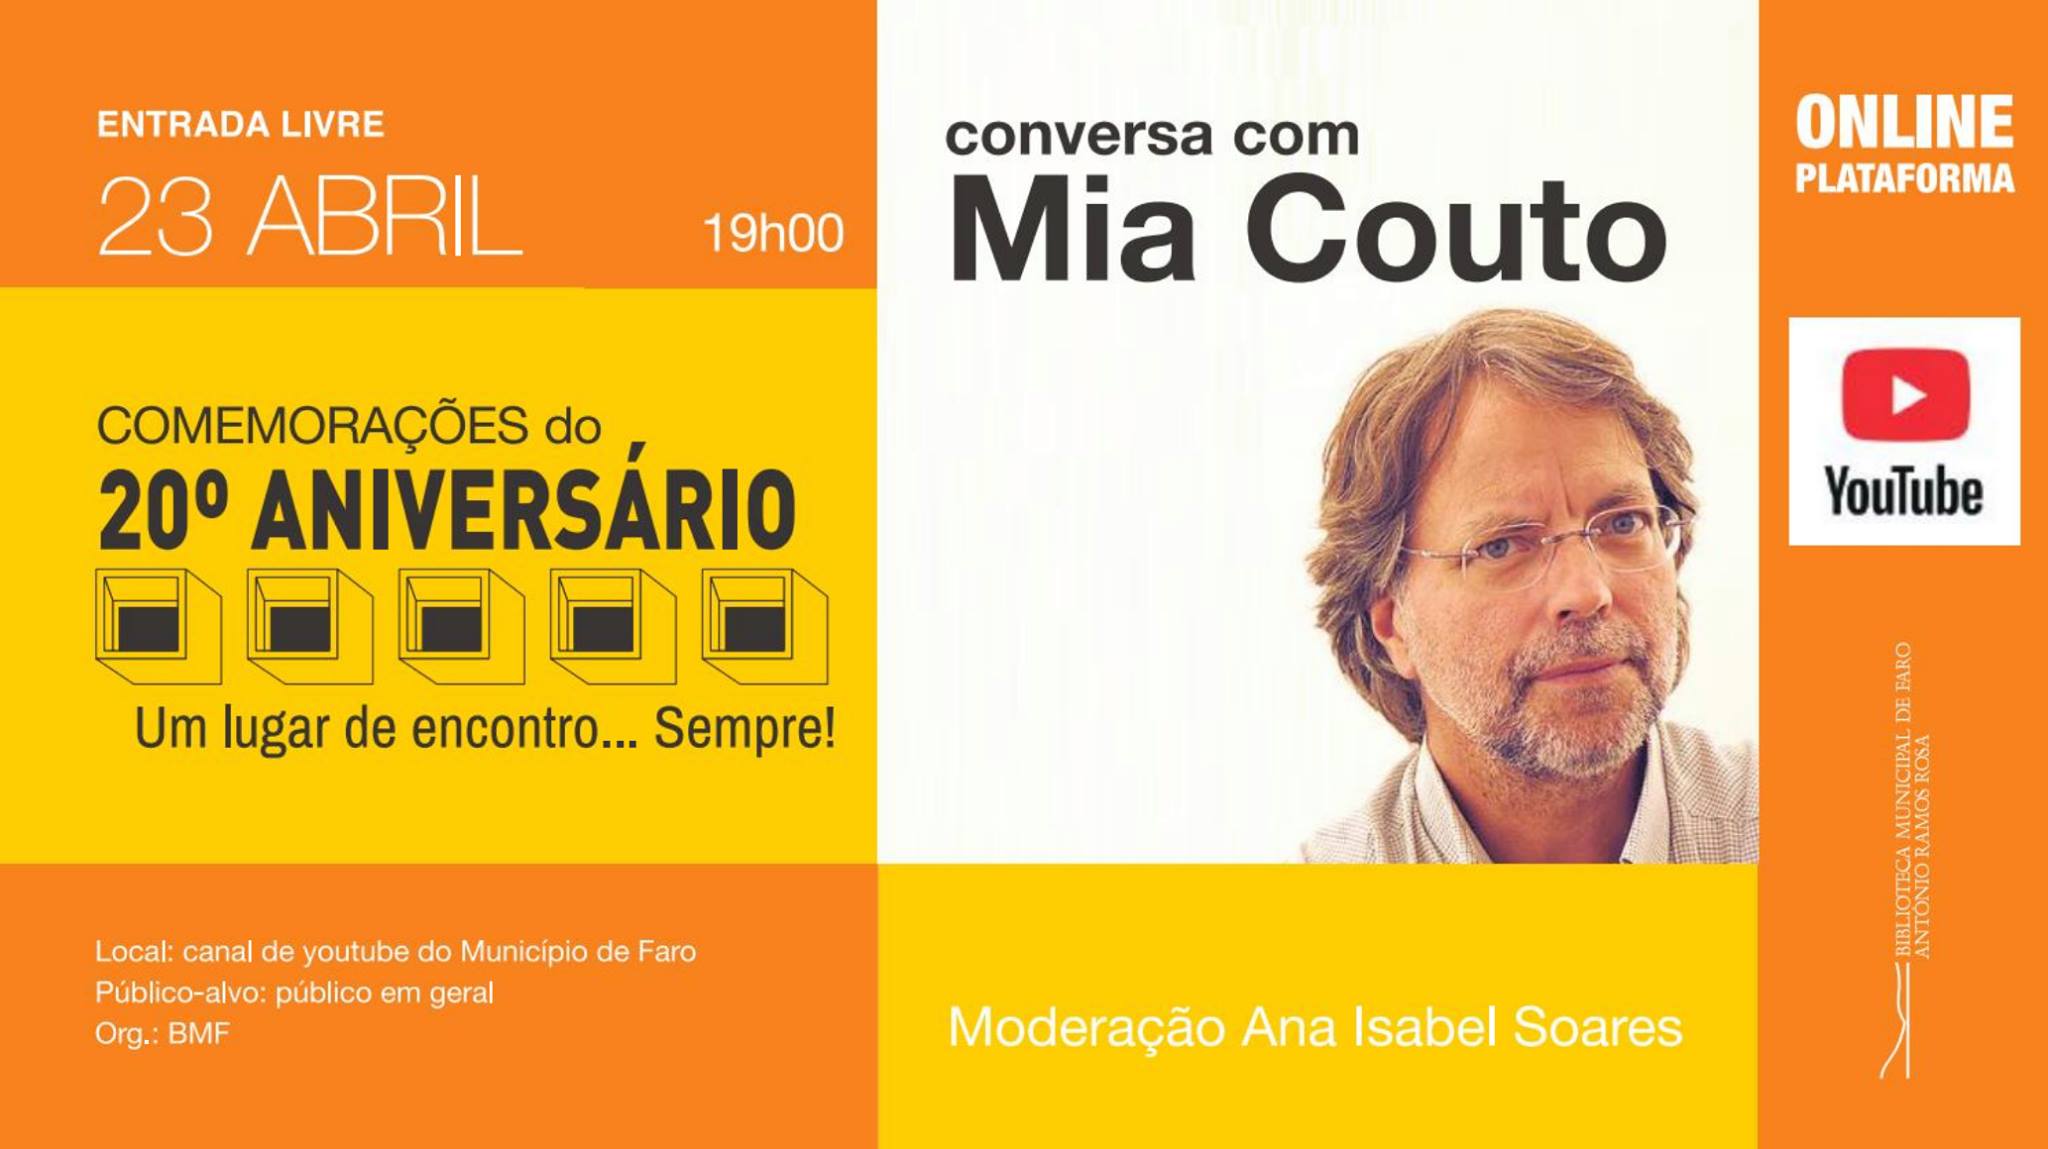 Conversa com Mia Couto | Em direto no YOUTUBE